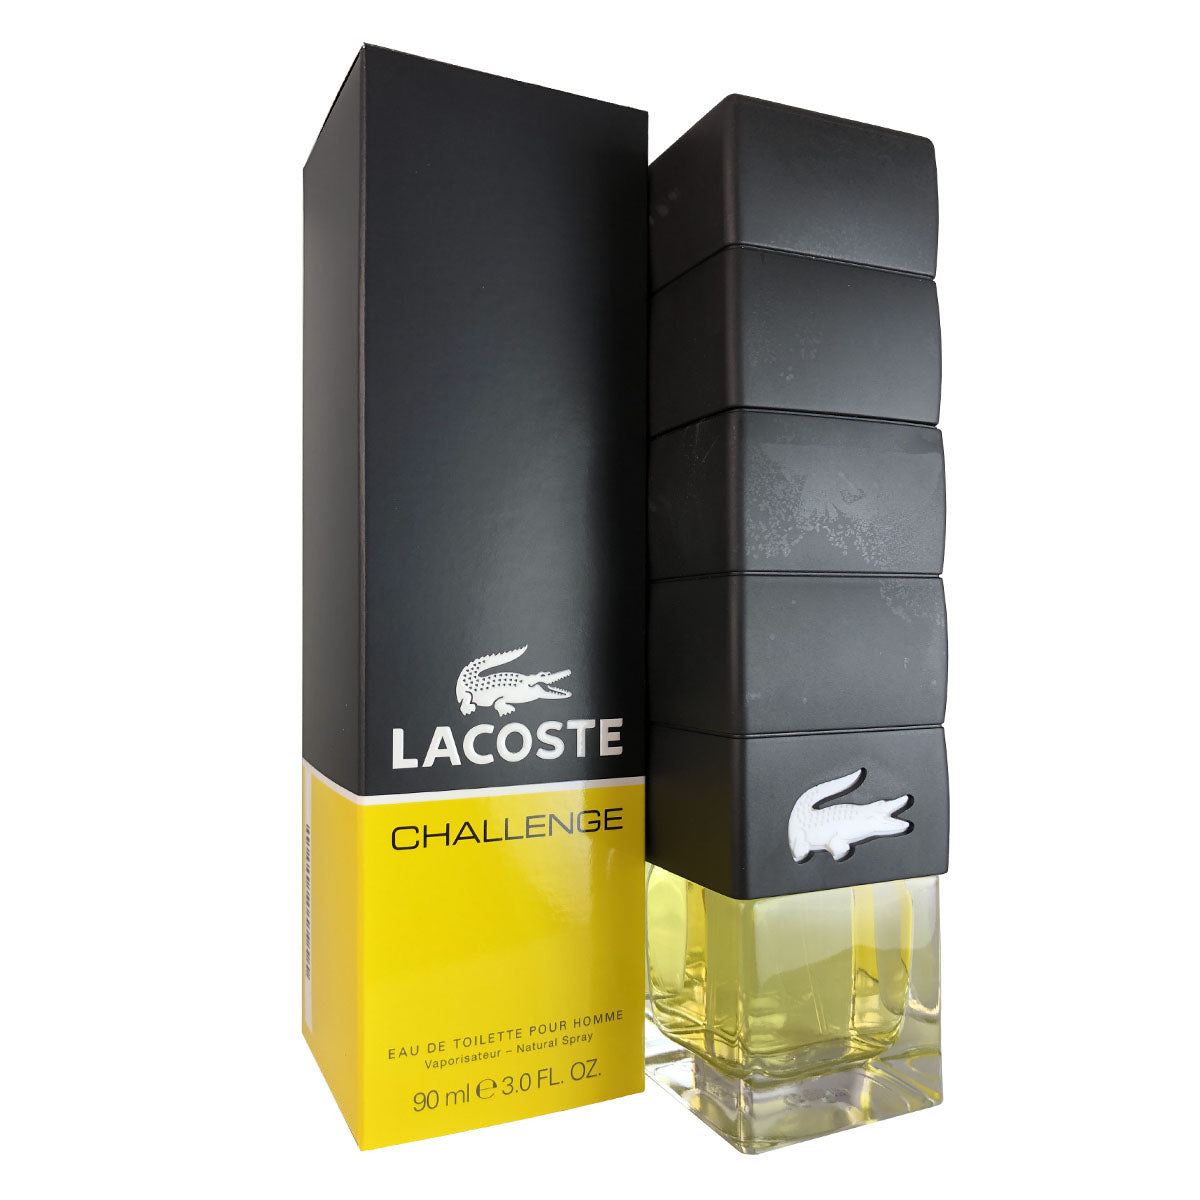 Lacoste Challenge for Men by Lacoste 3.0 oz Eau de Toilette Spray